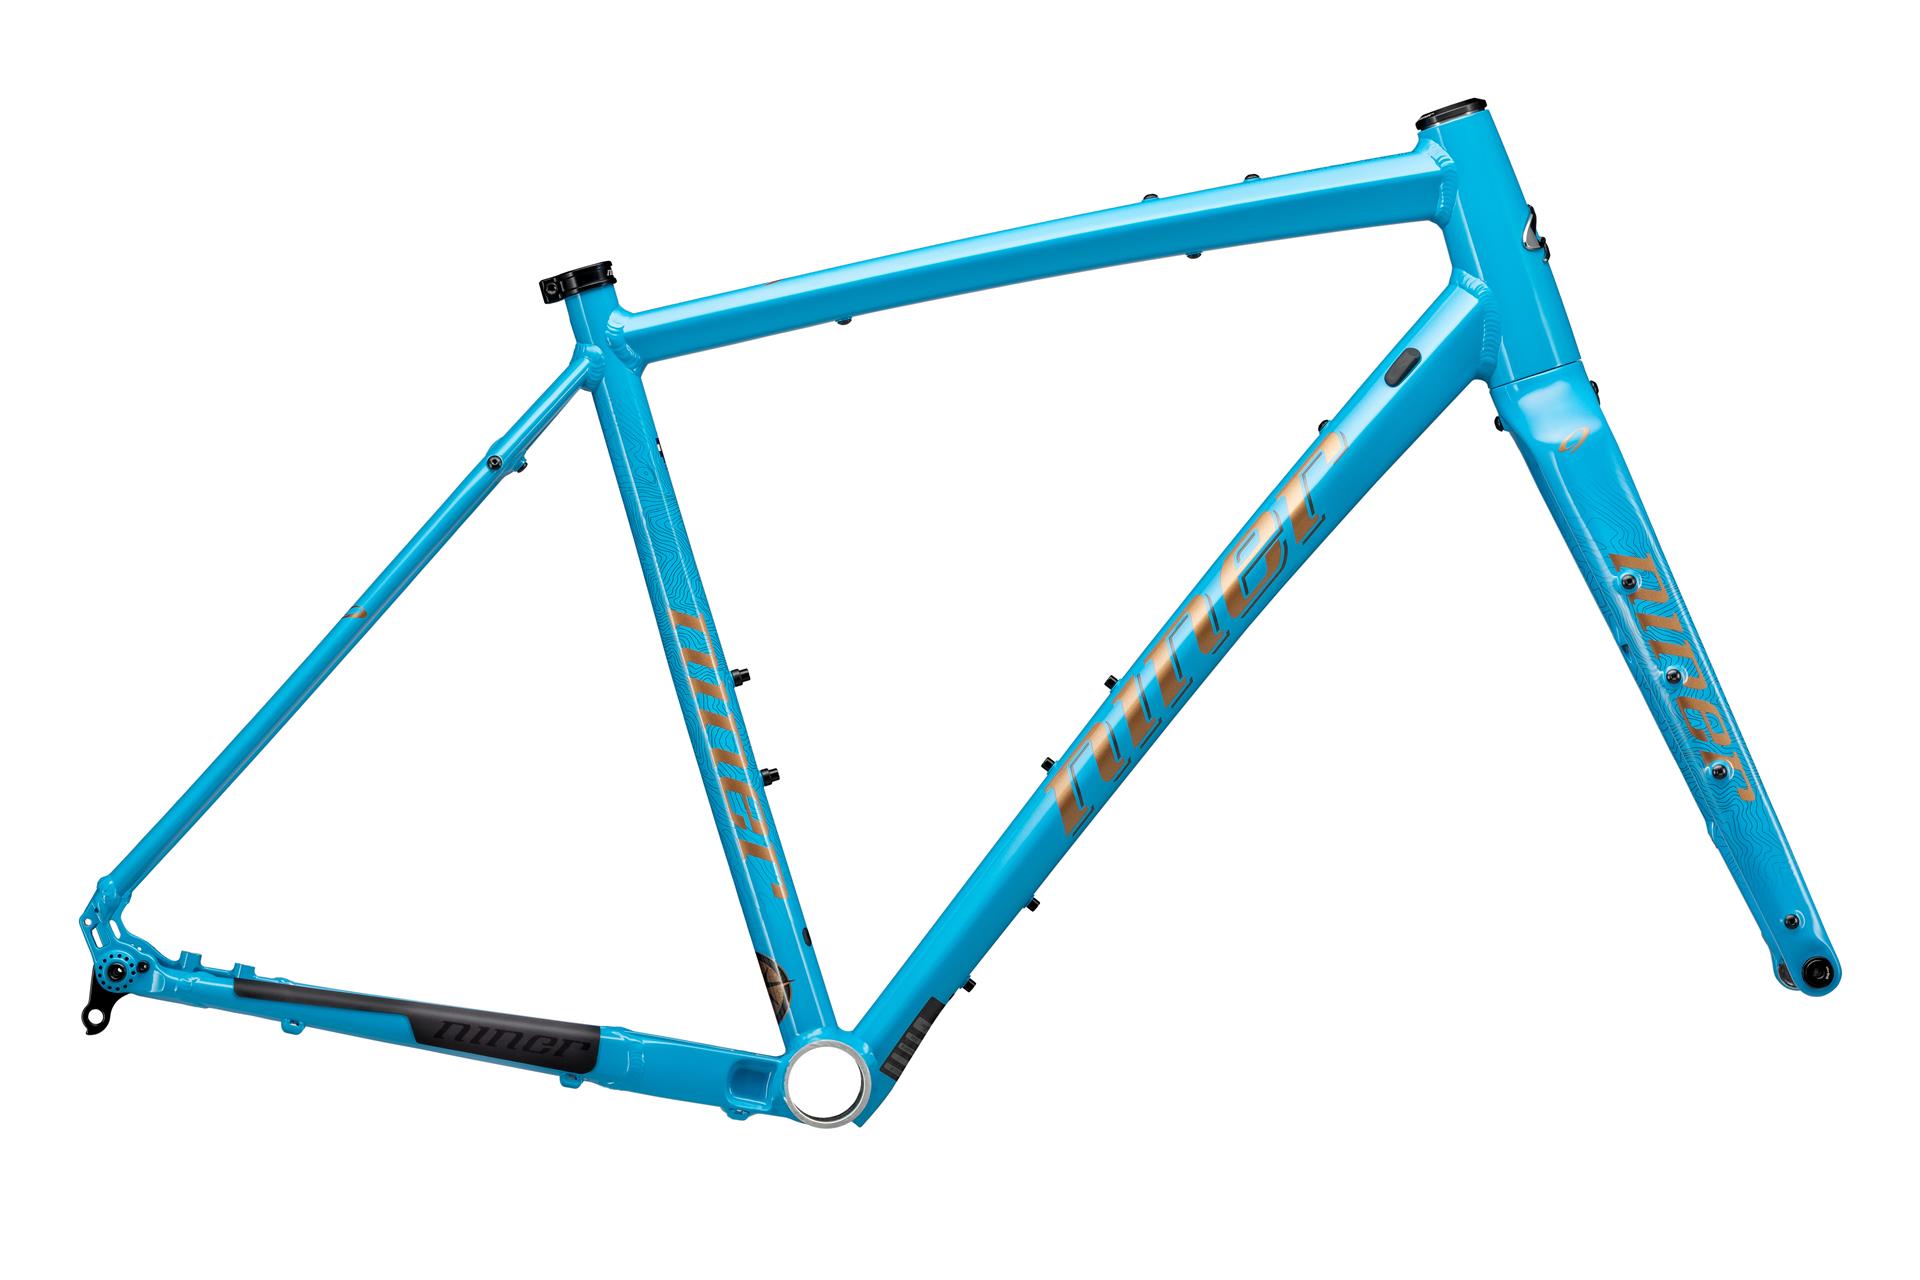 Niner RLT 2-star bike, Blue, 56